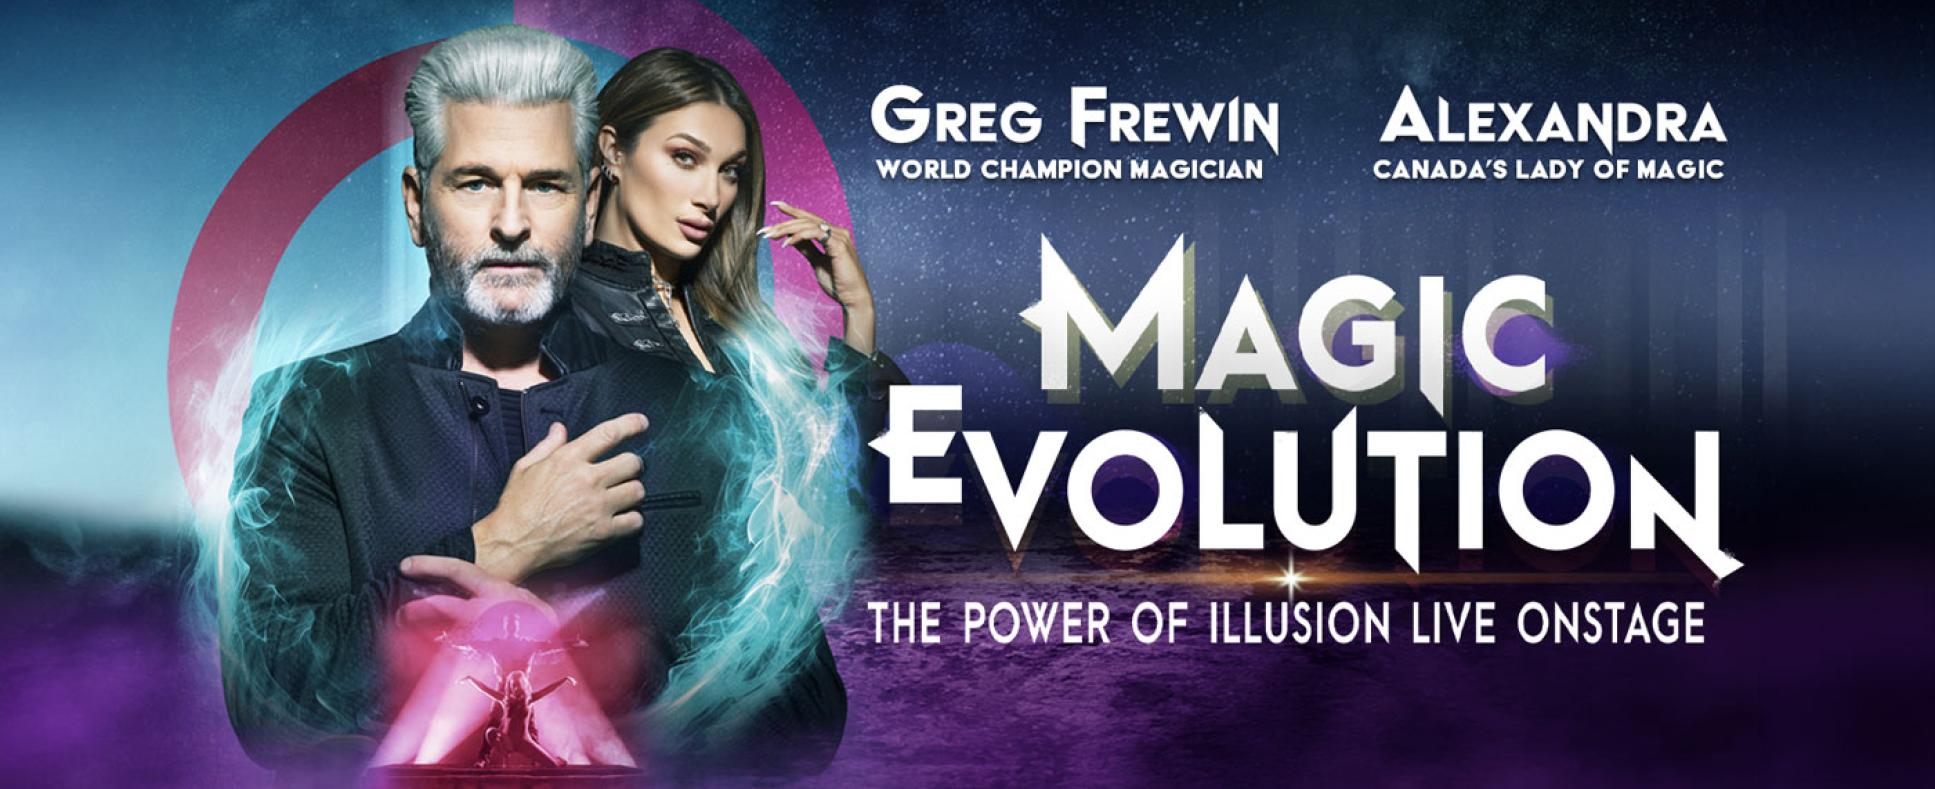 Evolution Magic promo poster for Greg Frewin Theatre